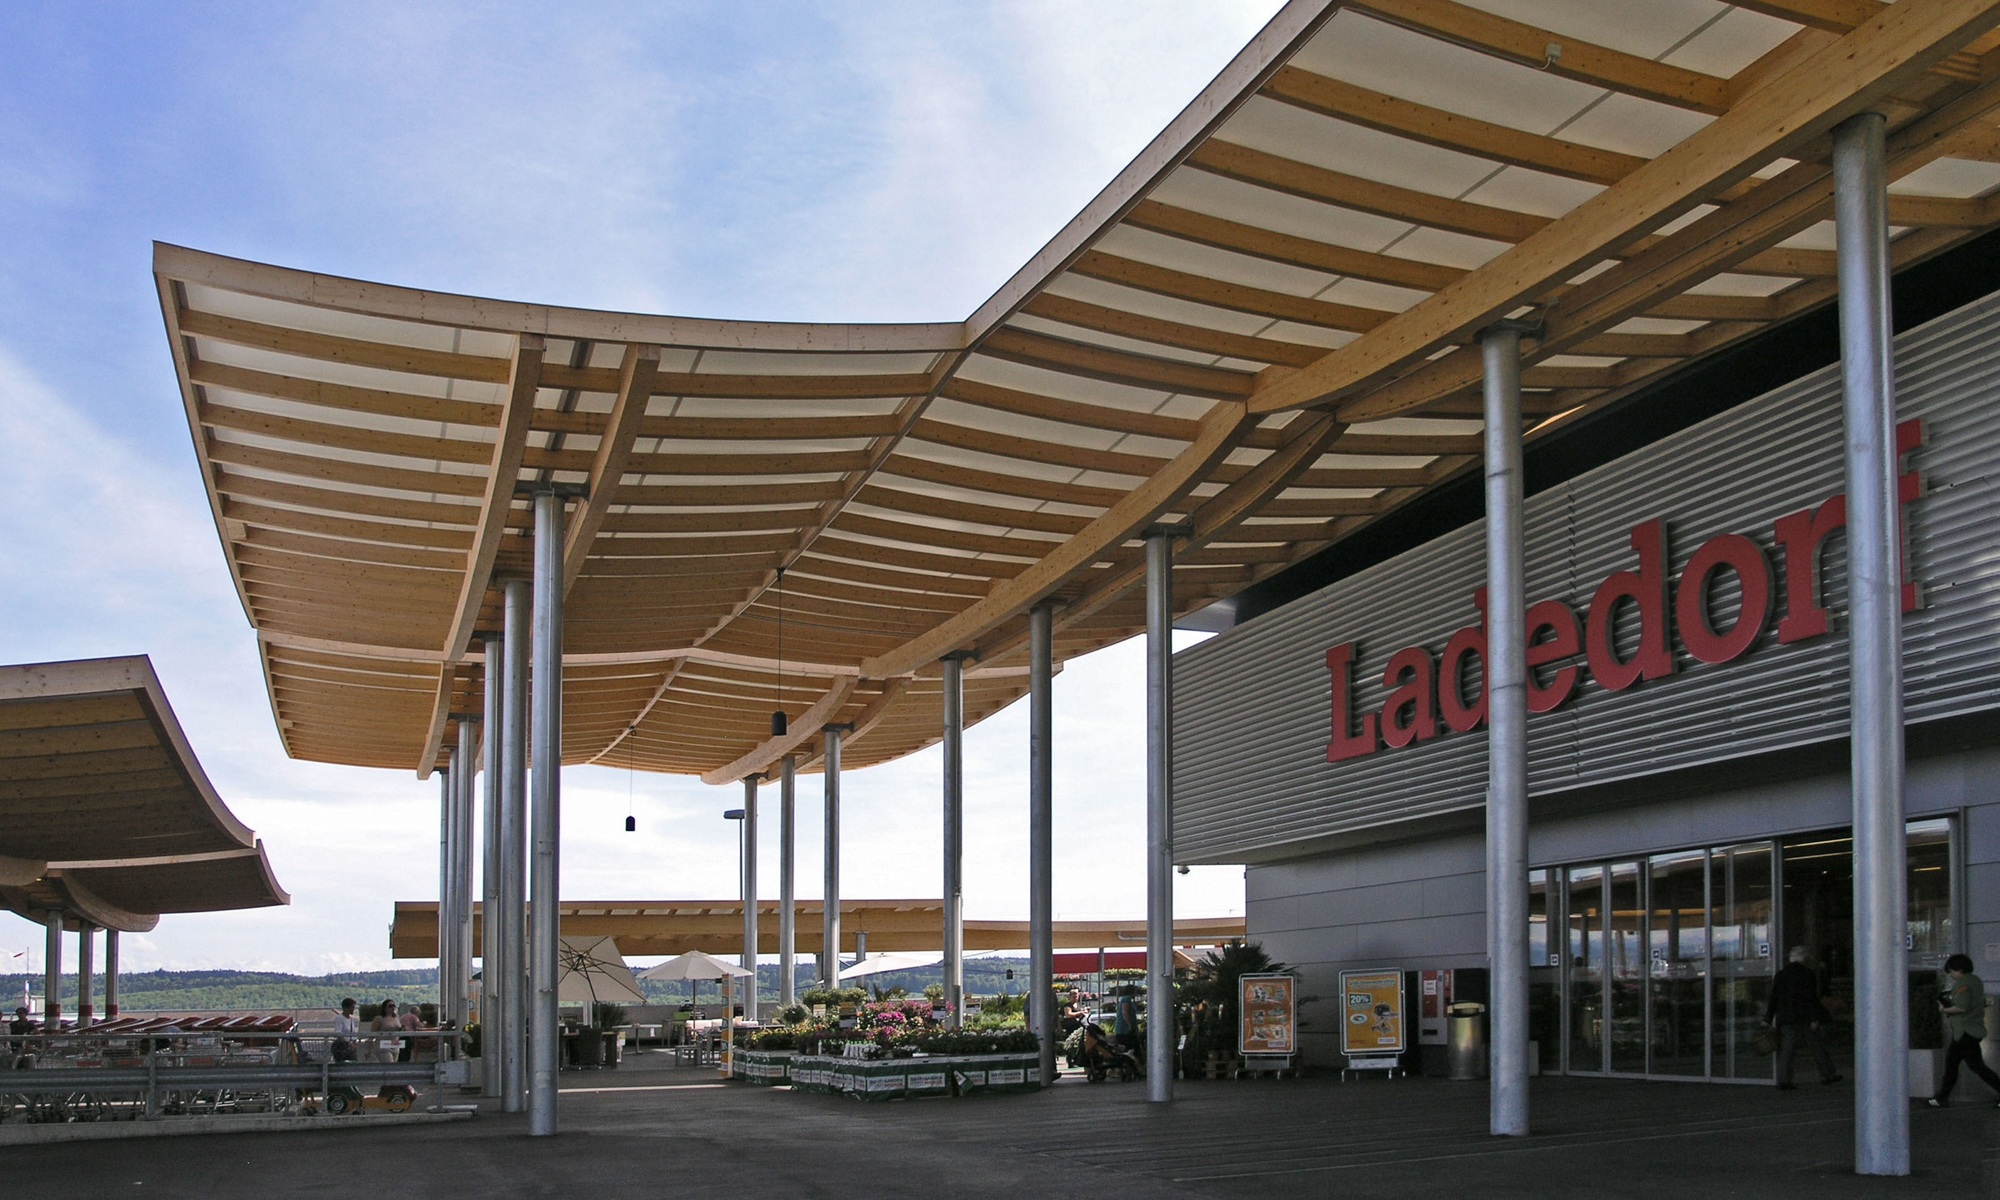 Aufnahme des Eingangsbereichs des Einkaufscenters Ladedorf mit Überdachung aus Holz